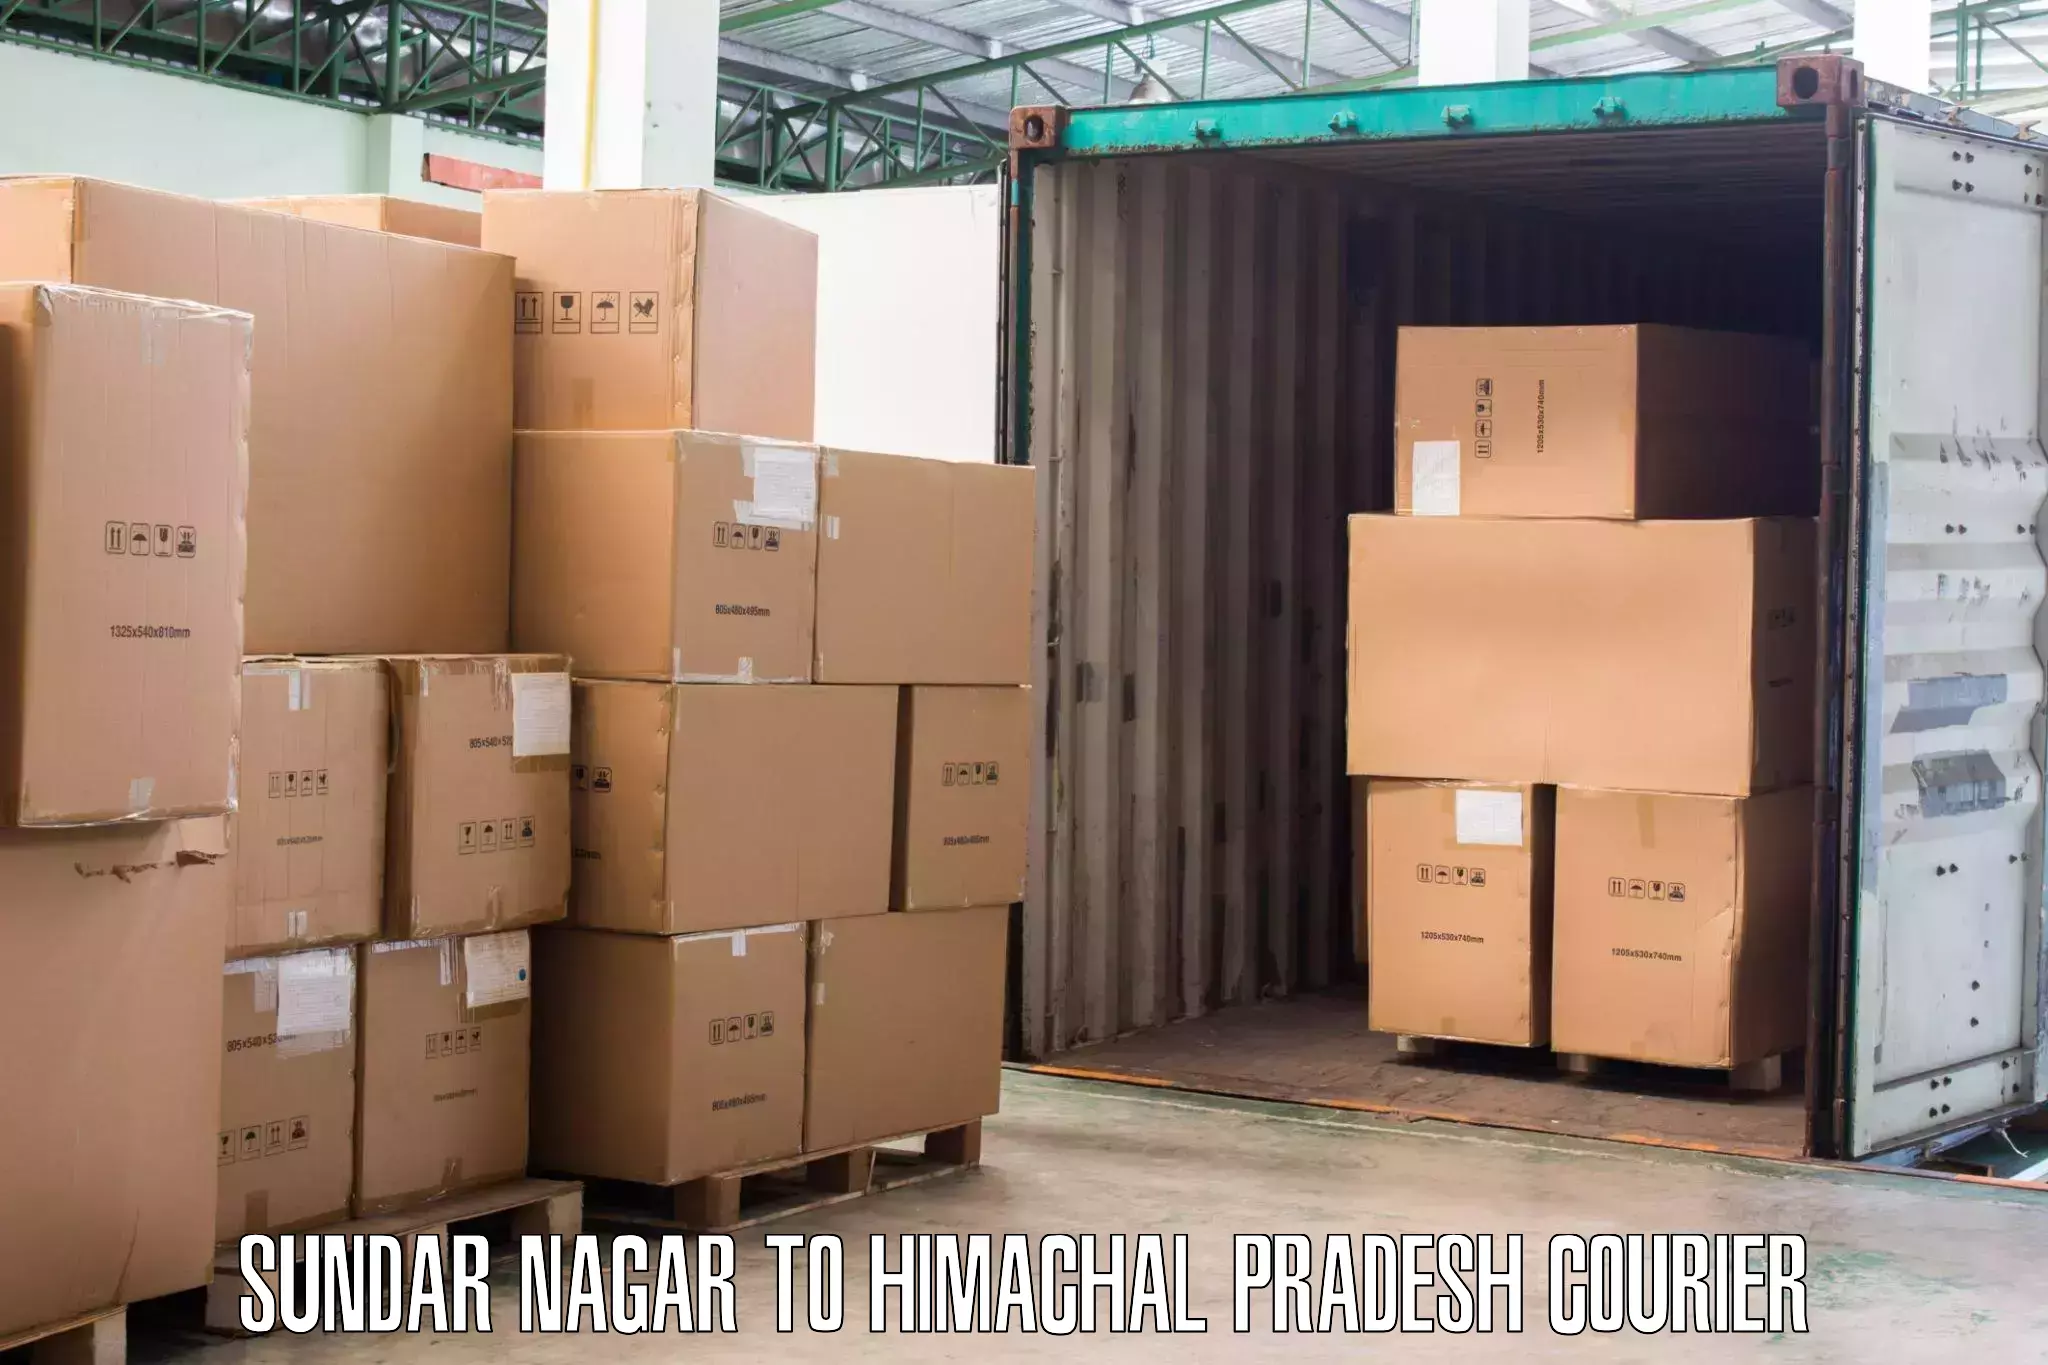 Local furniture movers in Sundar Nagar to Kachhera